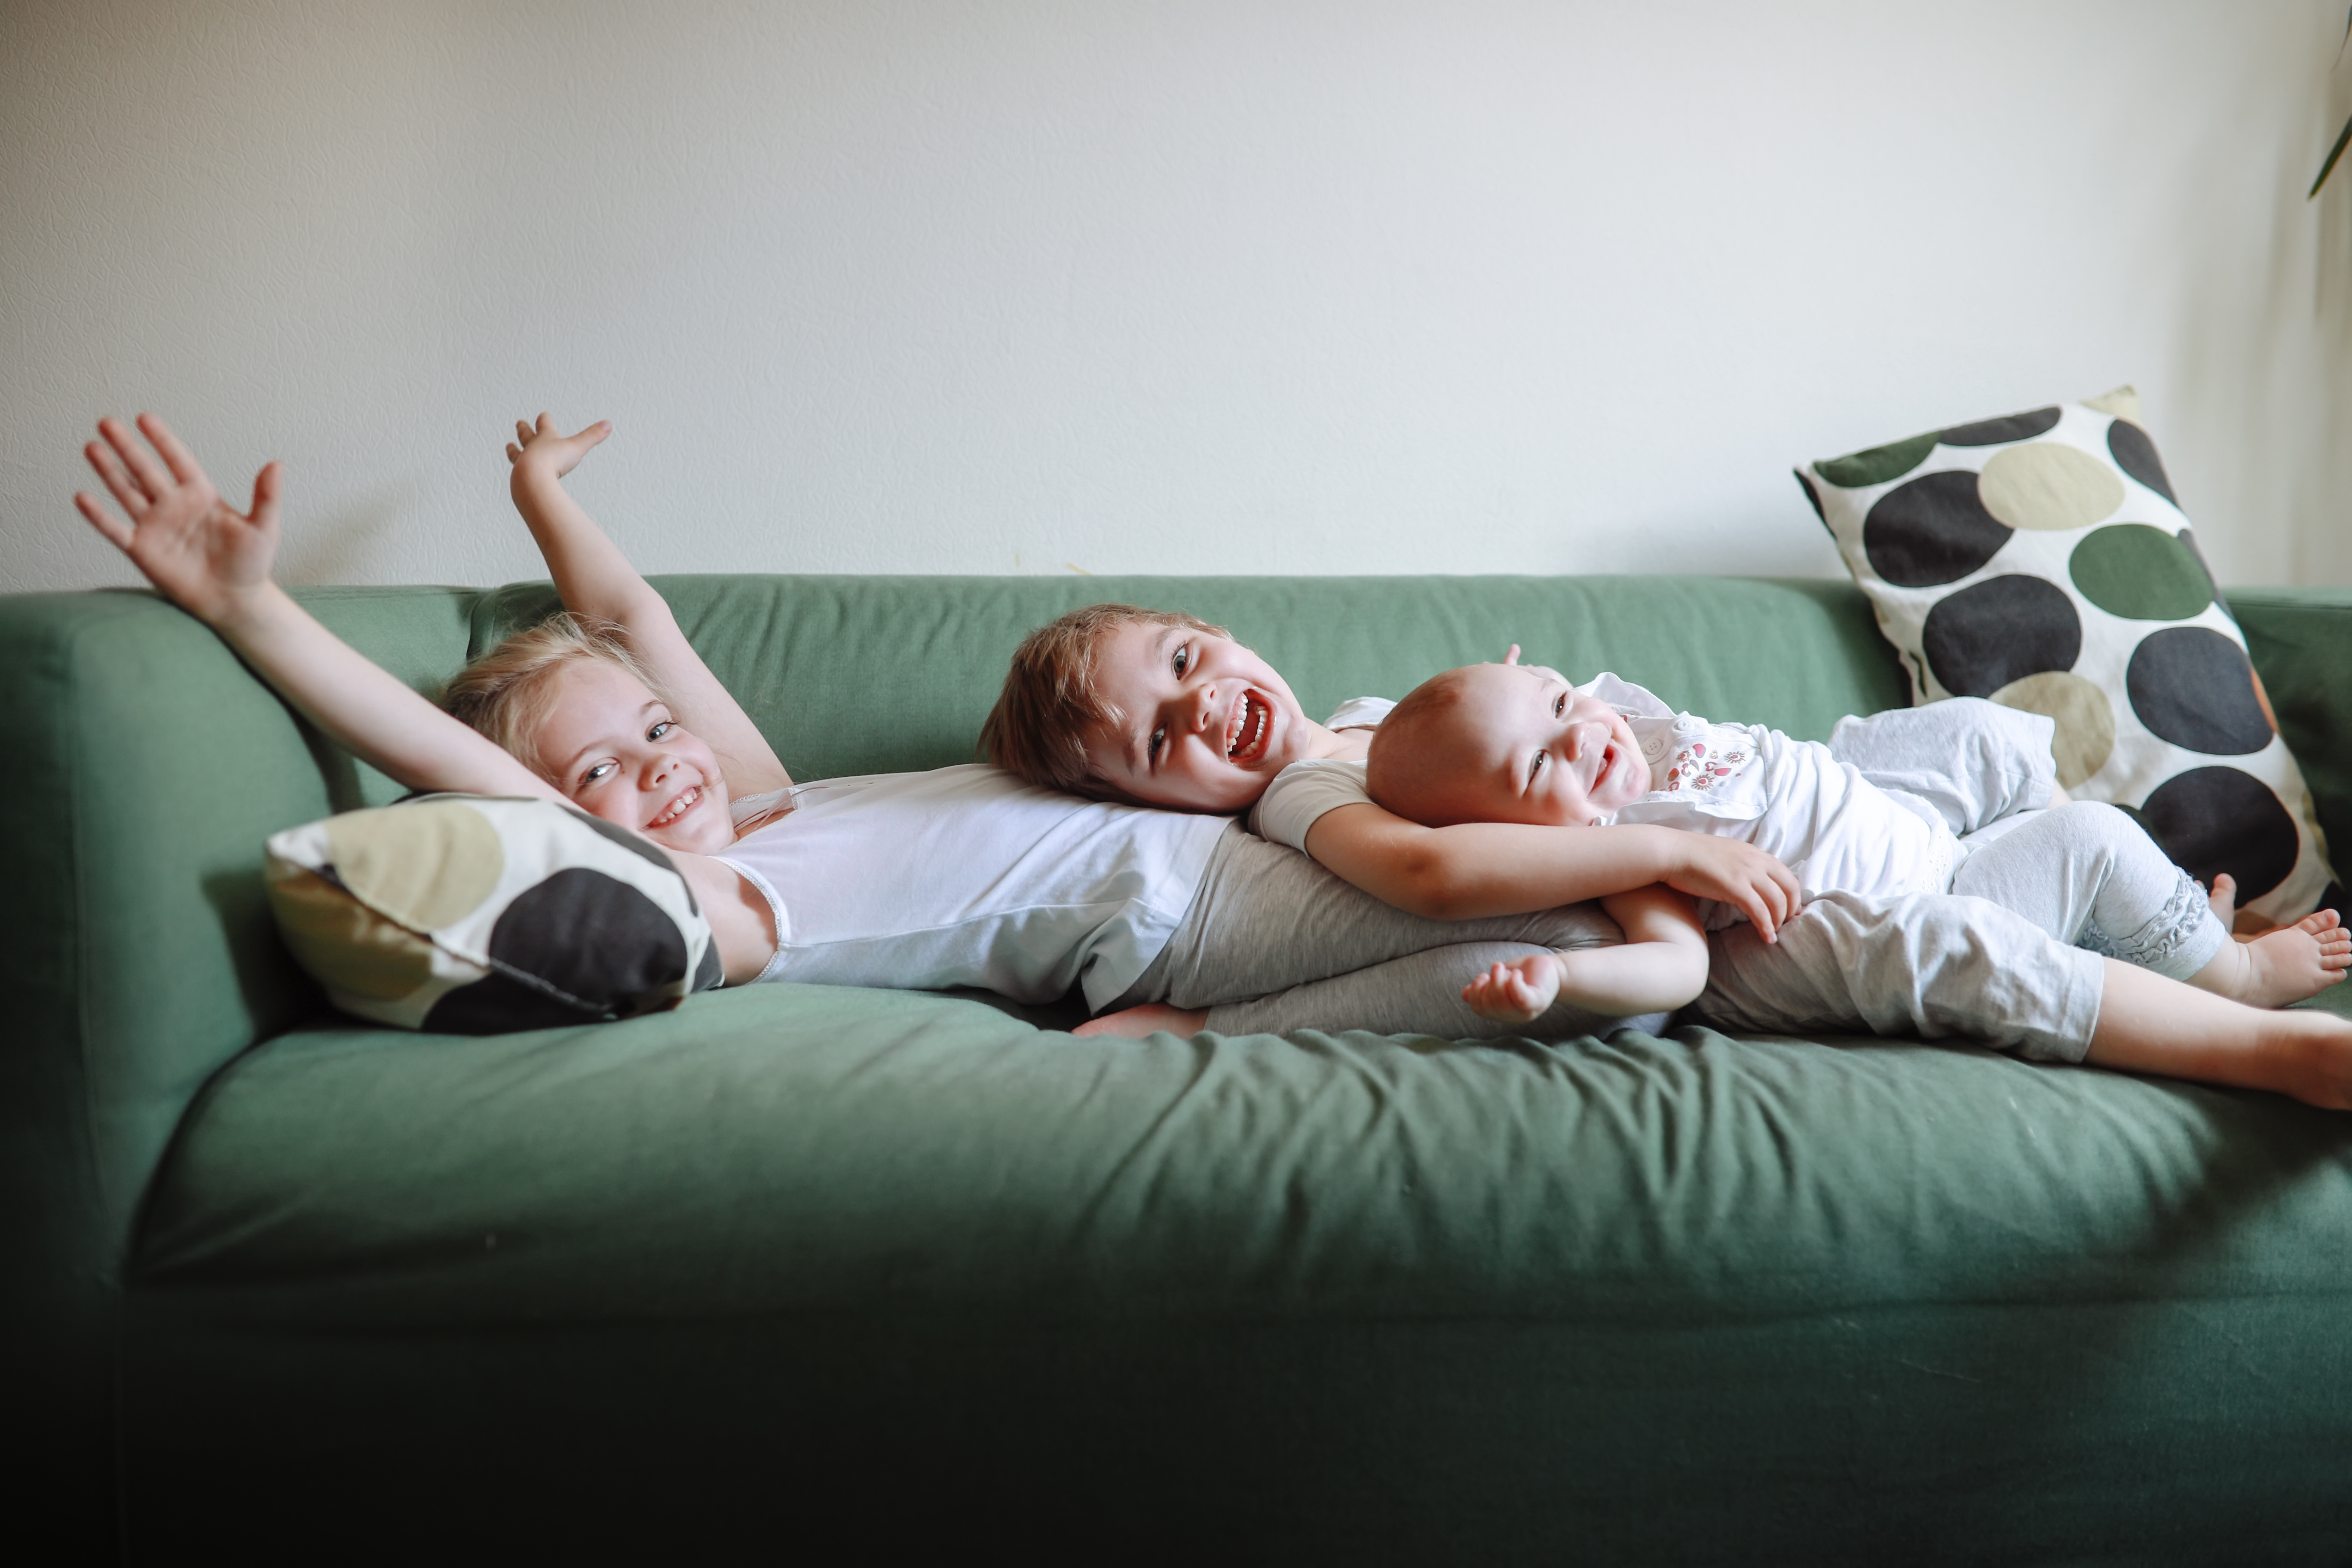 Une sœur et deux petits frères allongés sur un canapé vert | Source : Getty Images